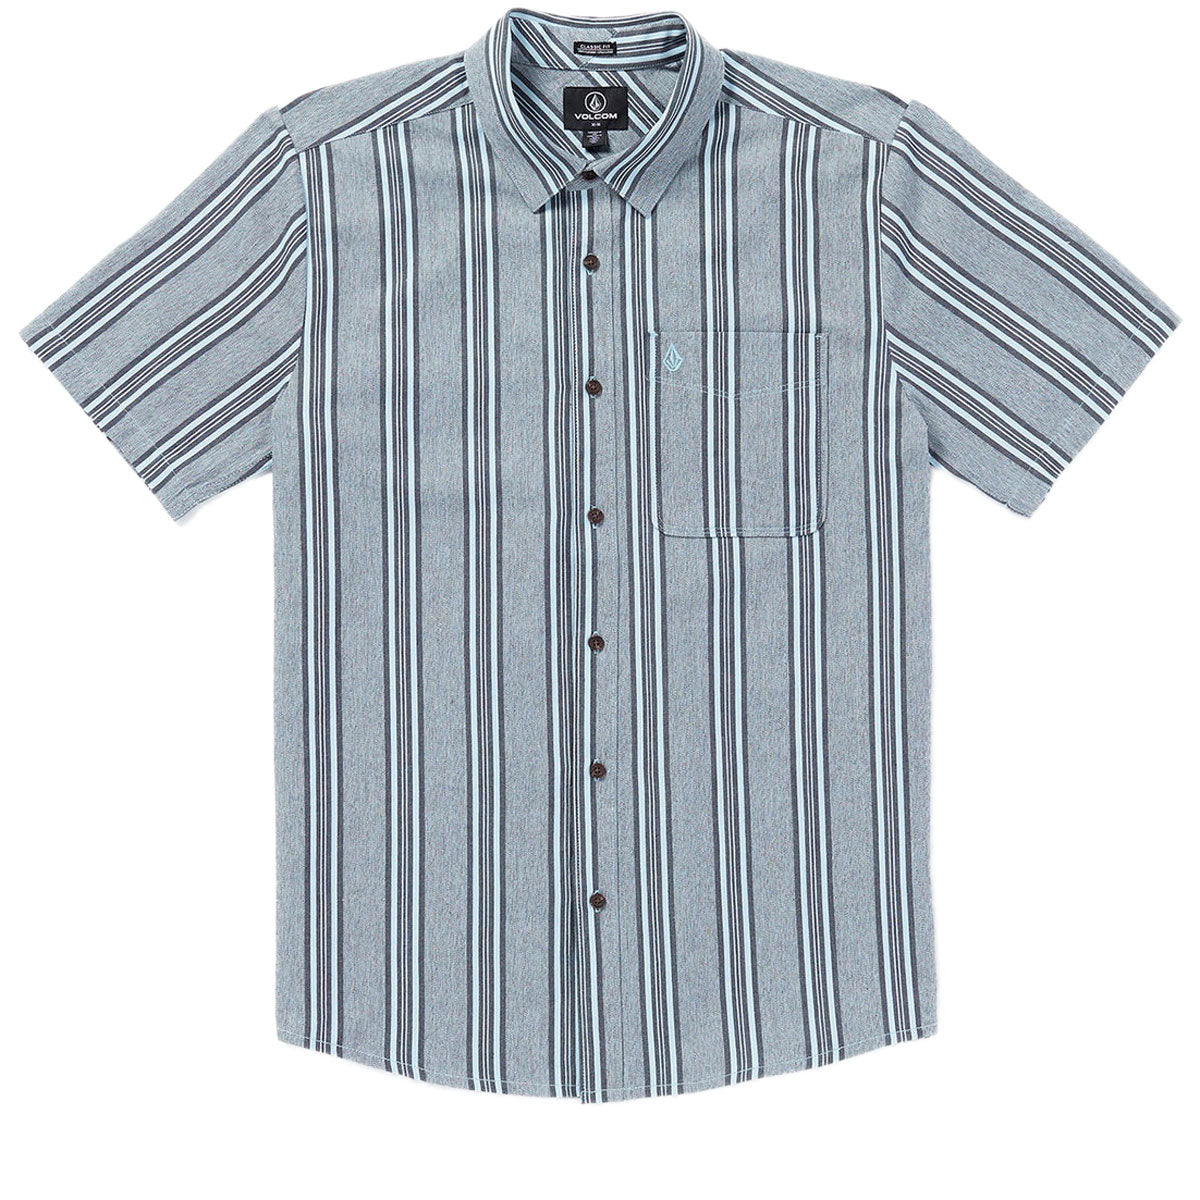 Volcom Newbar Stripe Shirt - Celestial Blue image 3